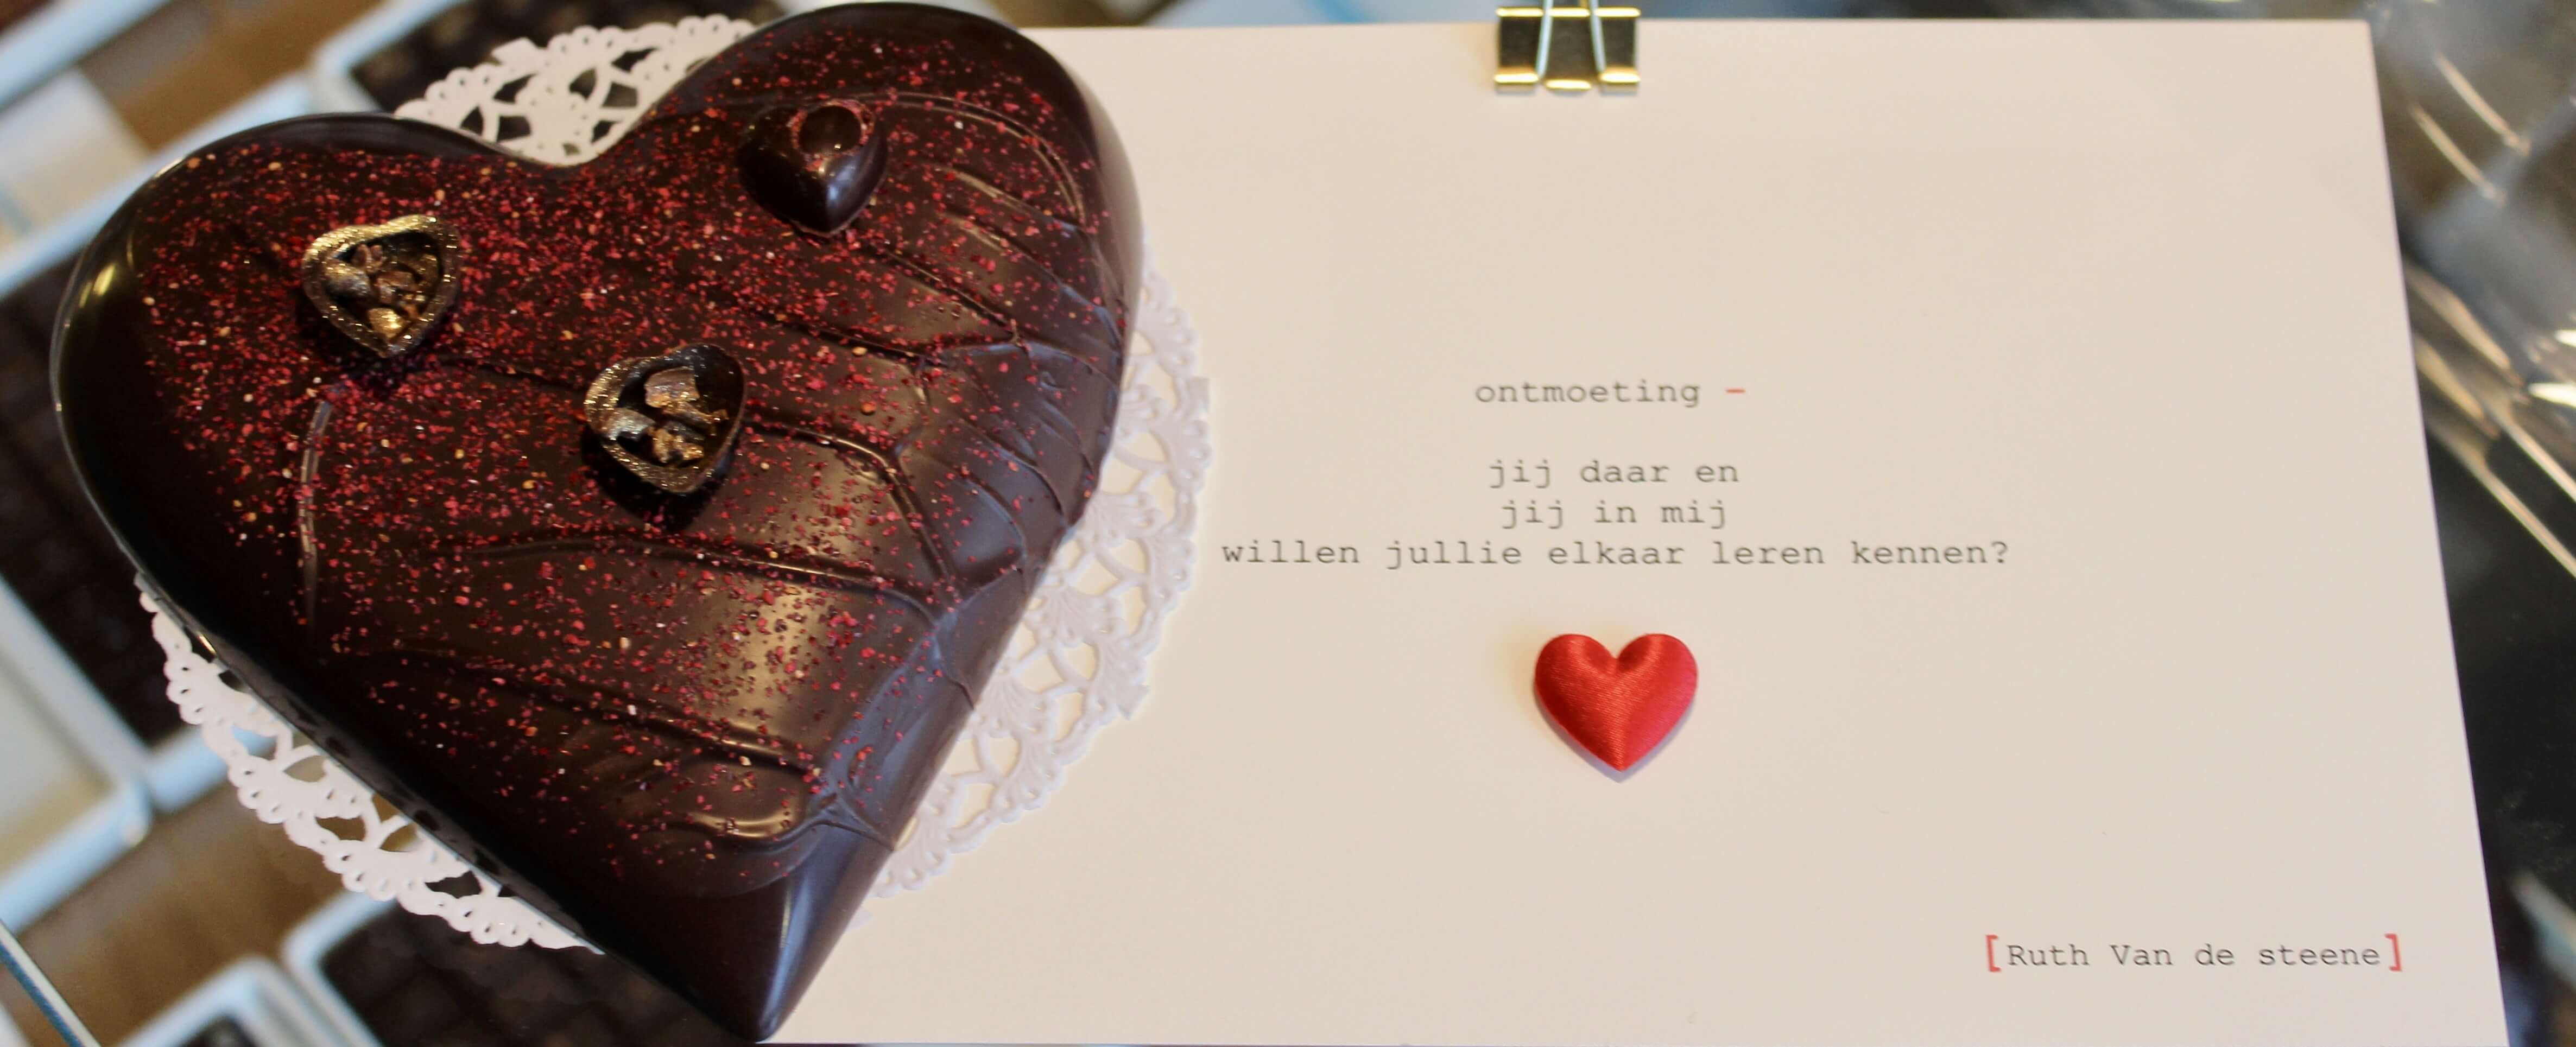 valentine 2019 hilde devolder chocolatier and poetry by ruth van de steen